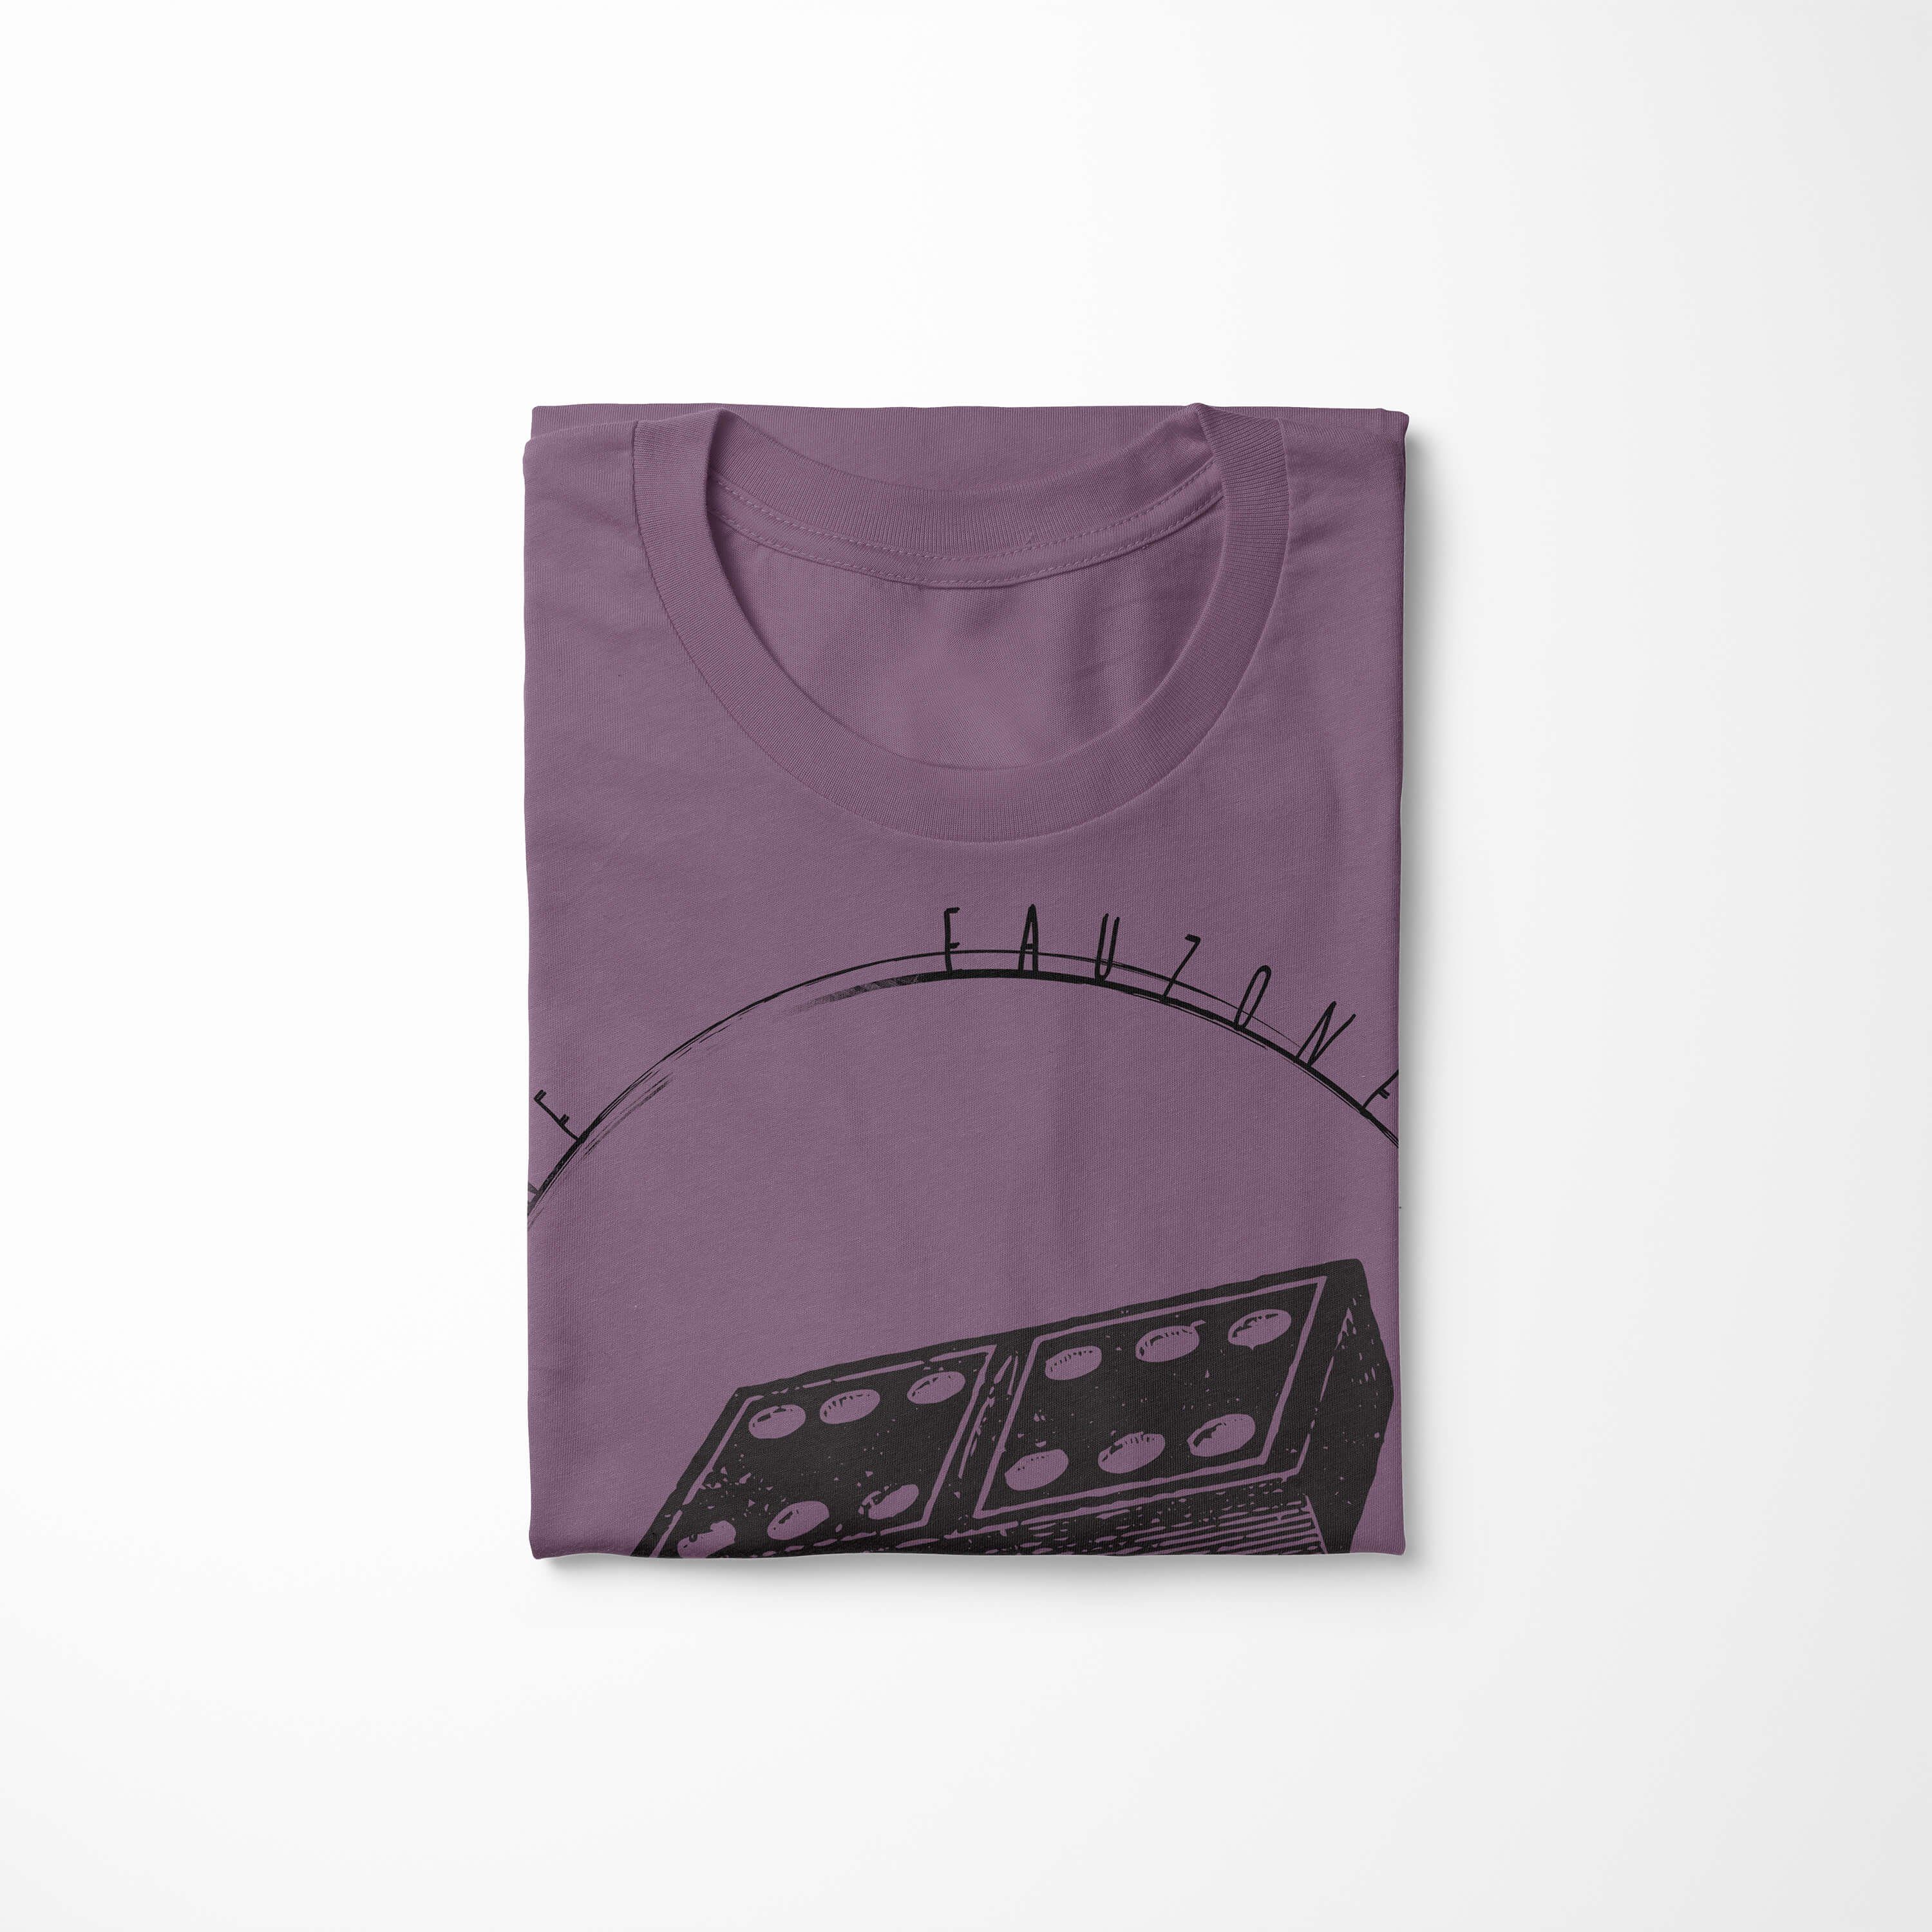 Dominostein T-Shirt Art Shiraz Herren T-Shirt Sinus Vintage